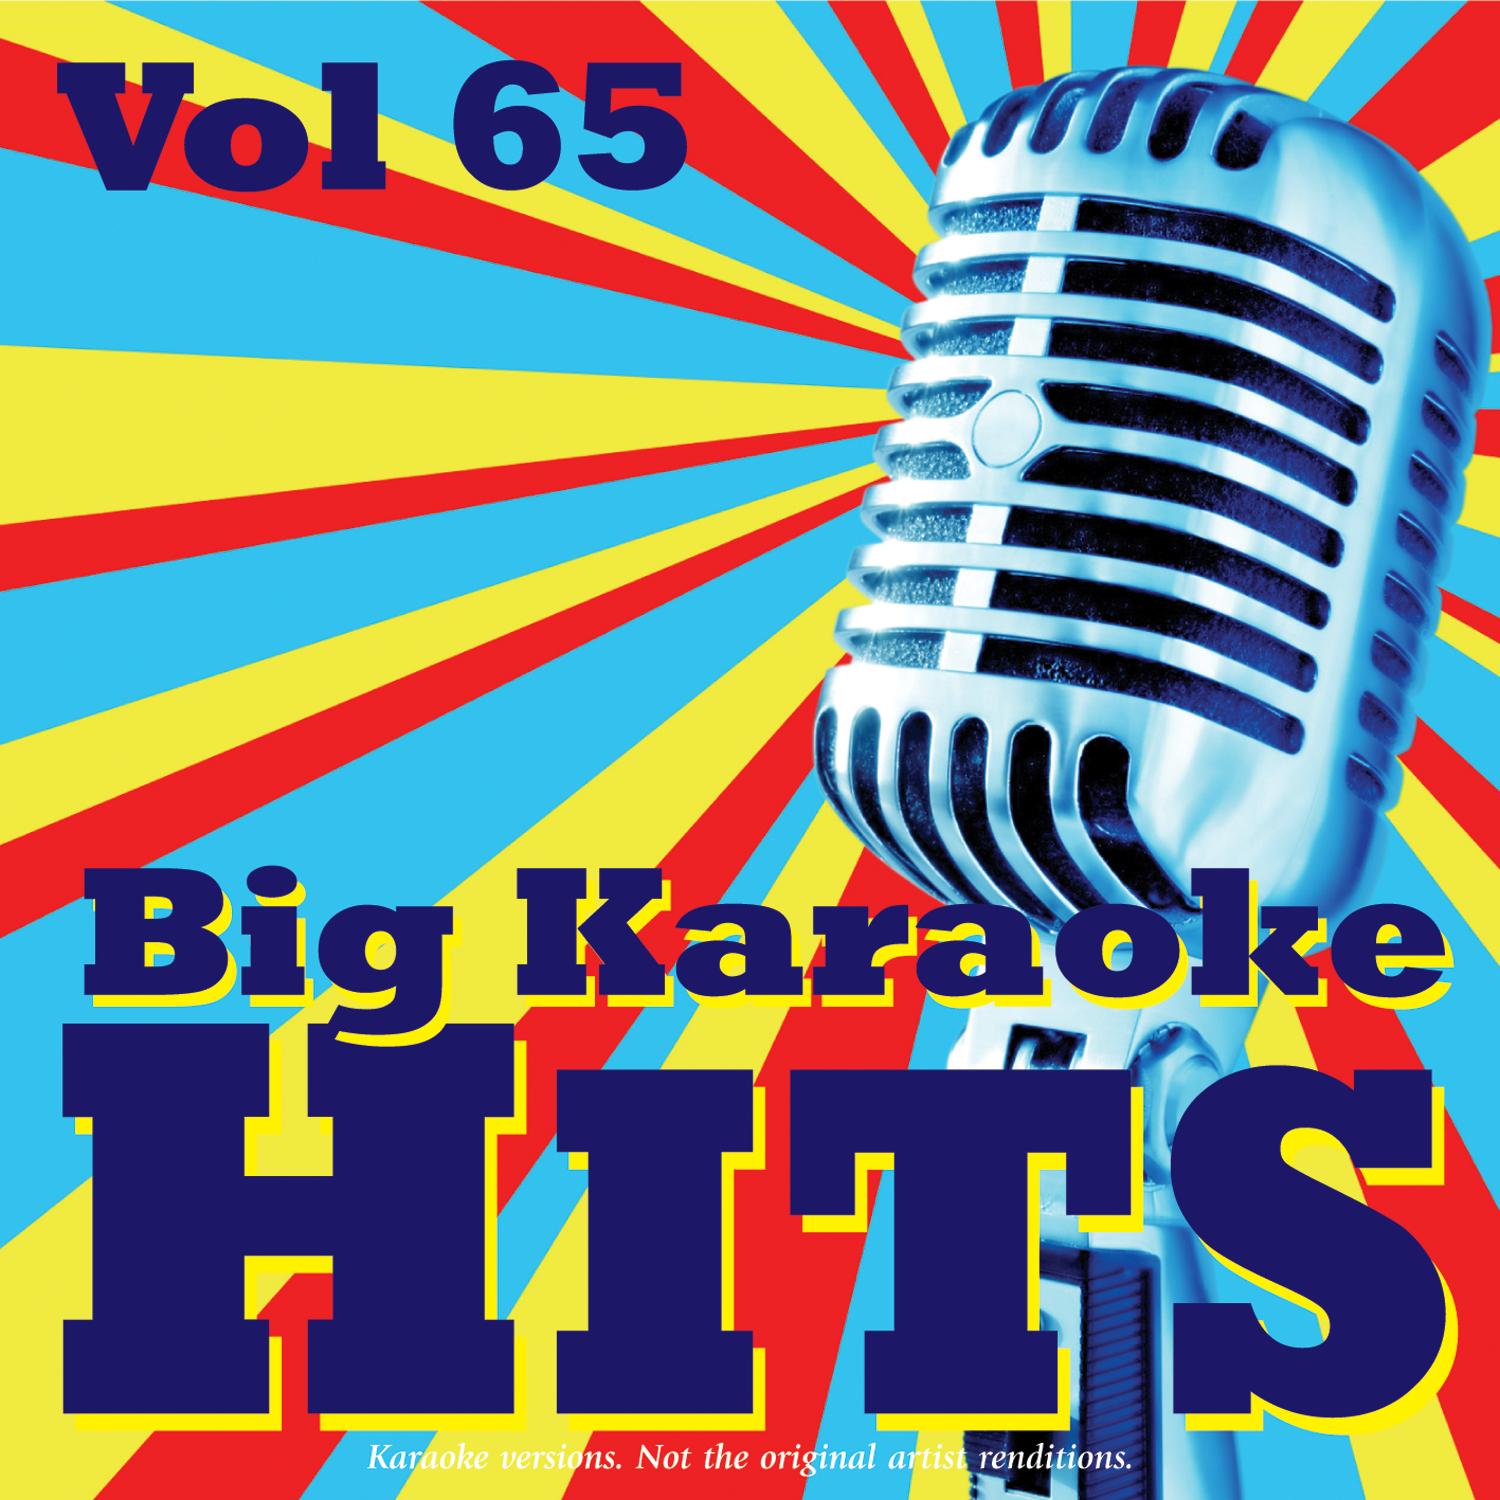 Big Karaoke Hits Vol.65